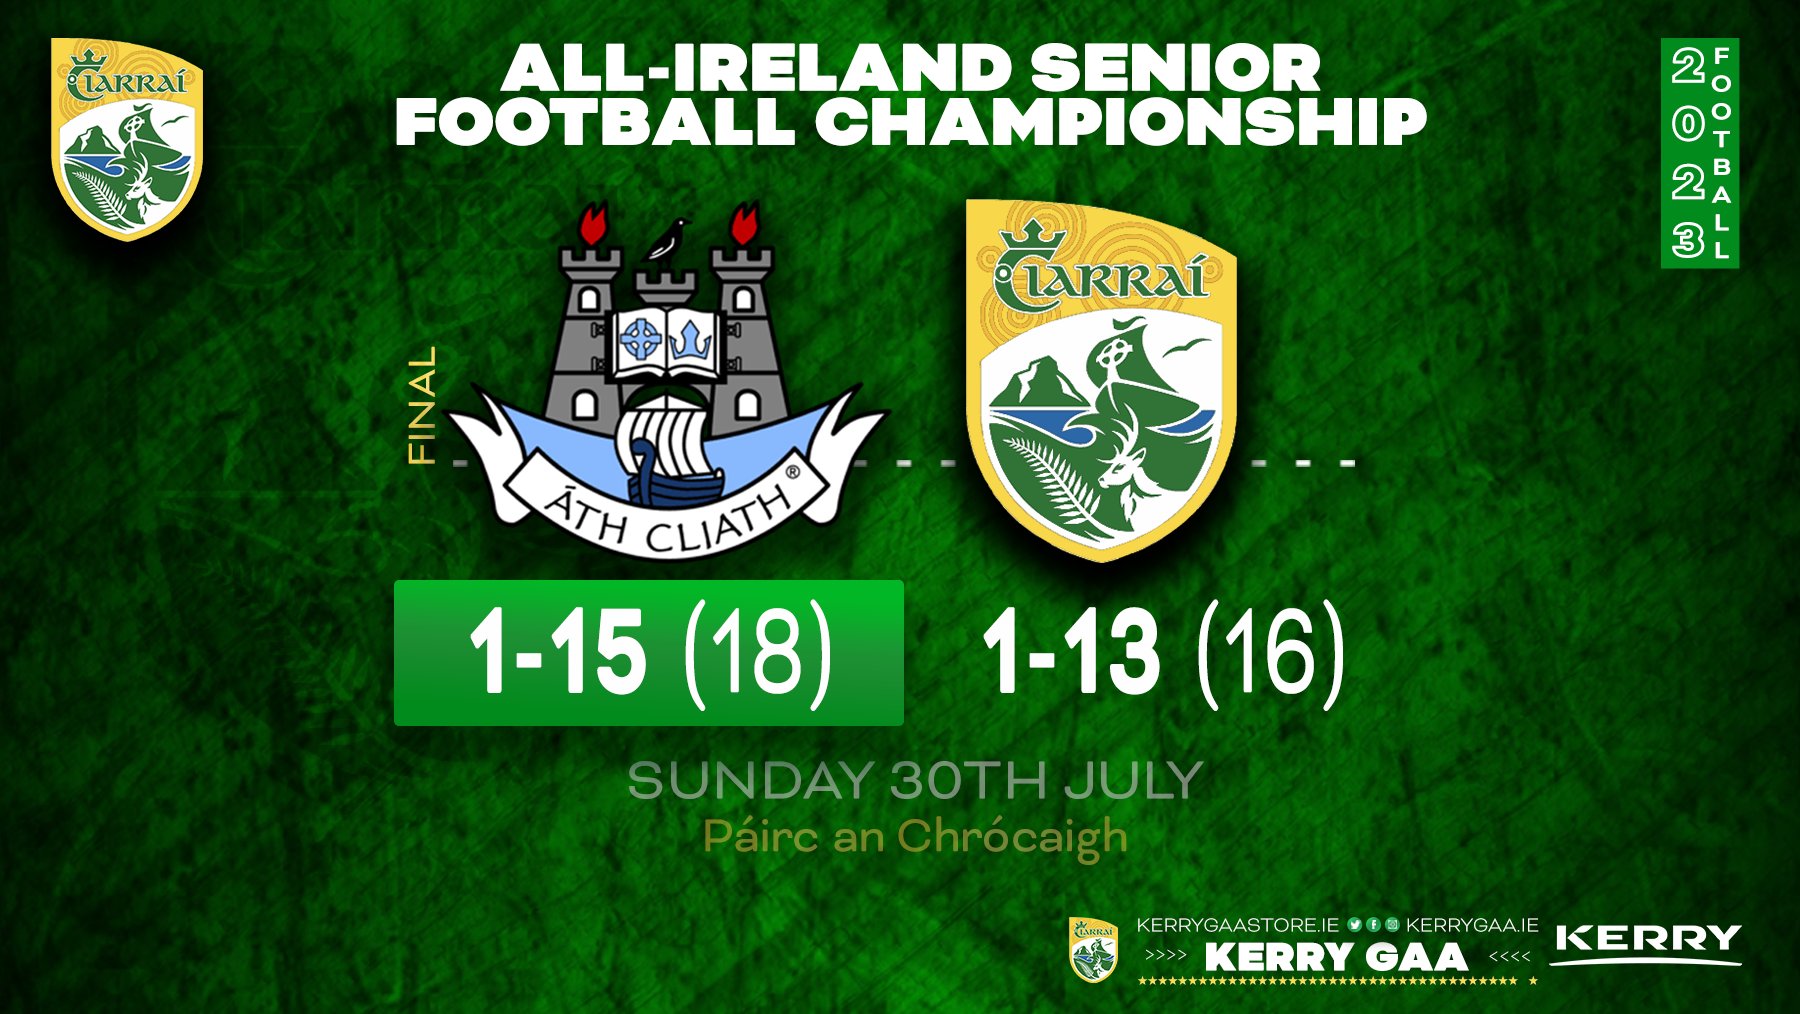 Heartbreak for the Kingdom in All-Ireland SFC Final